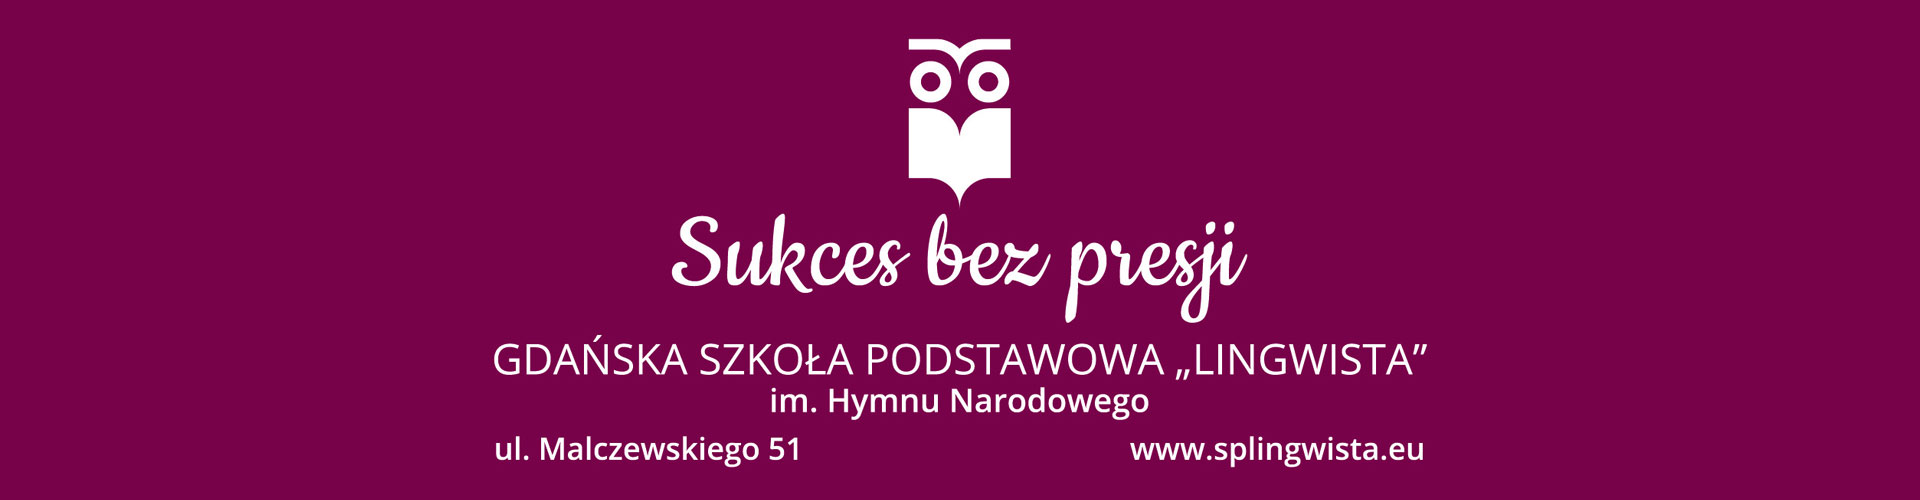 Gdańska Szkoła Podstawowa Lingwista